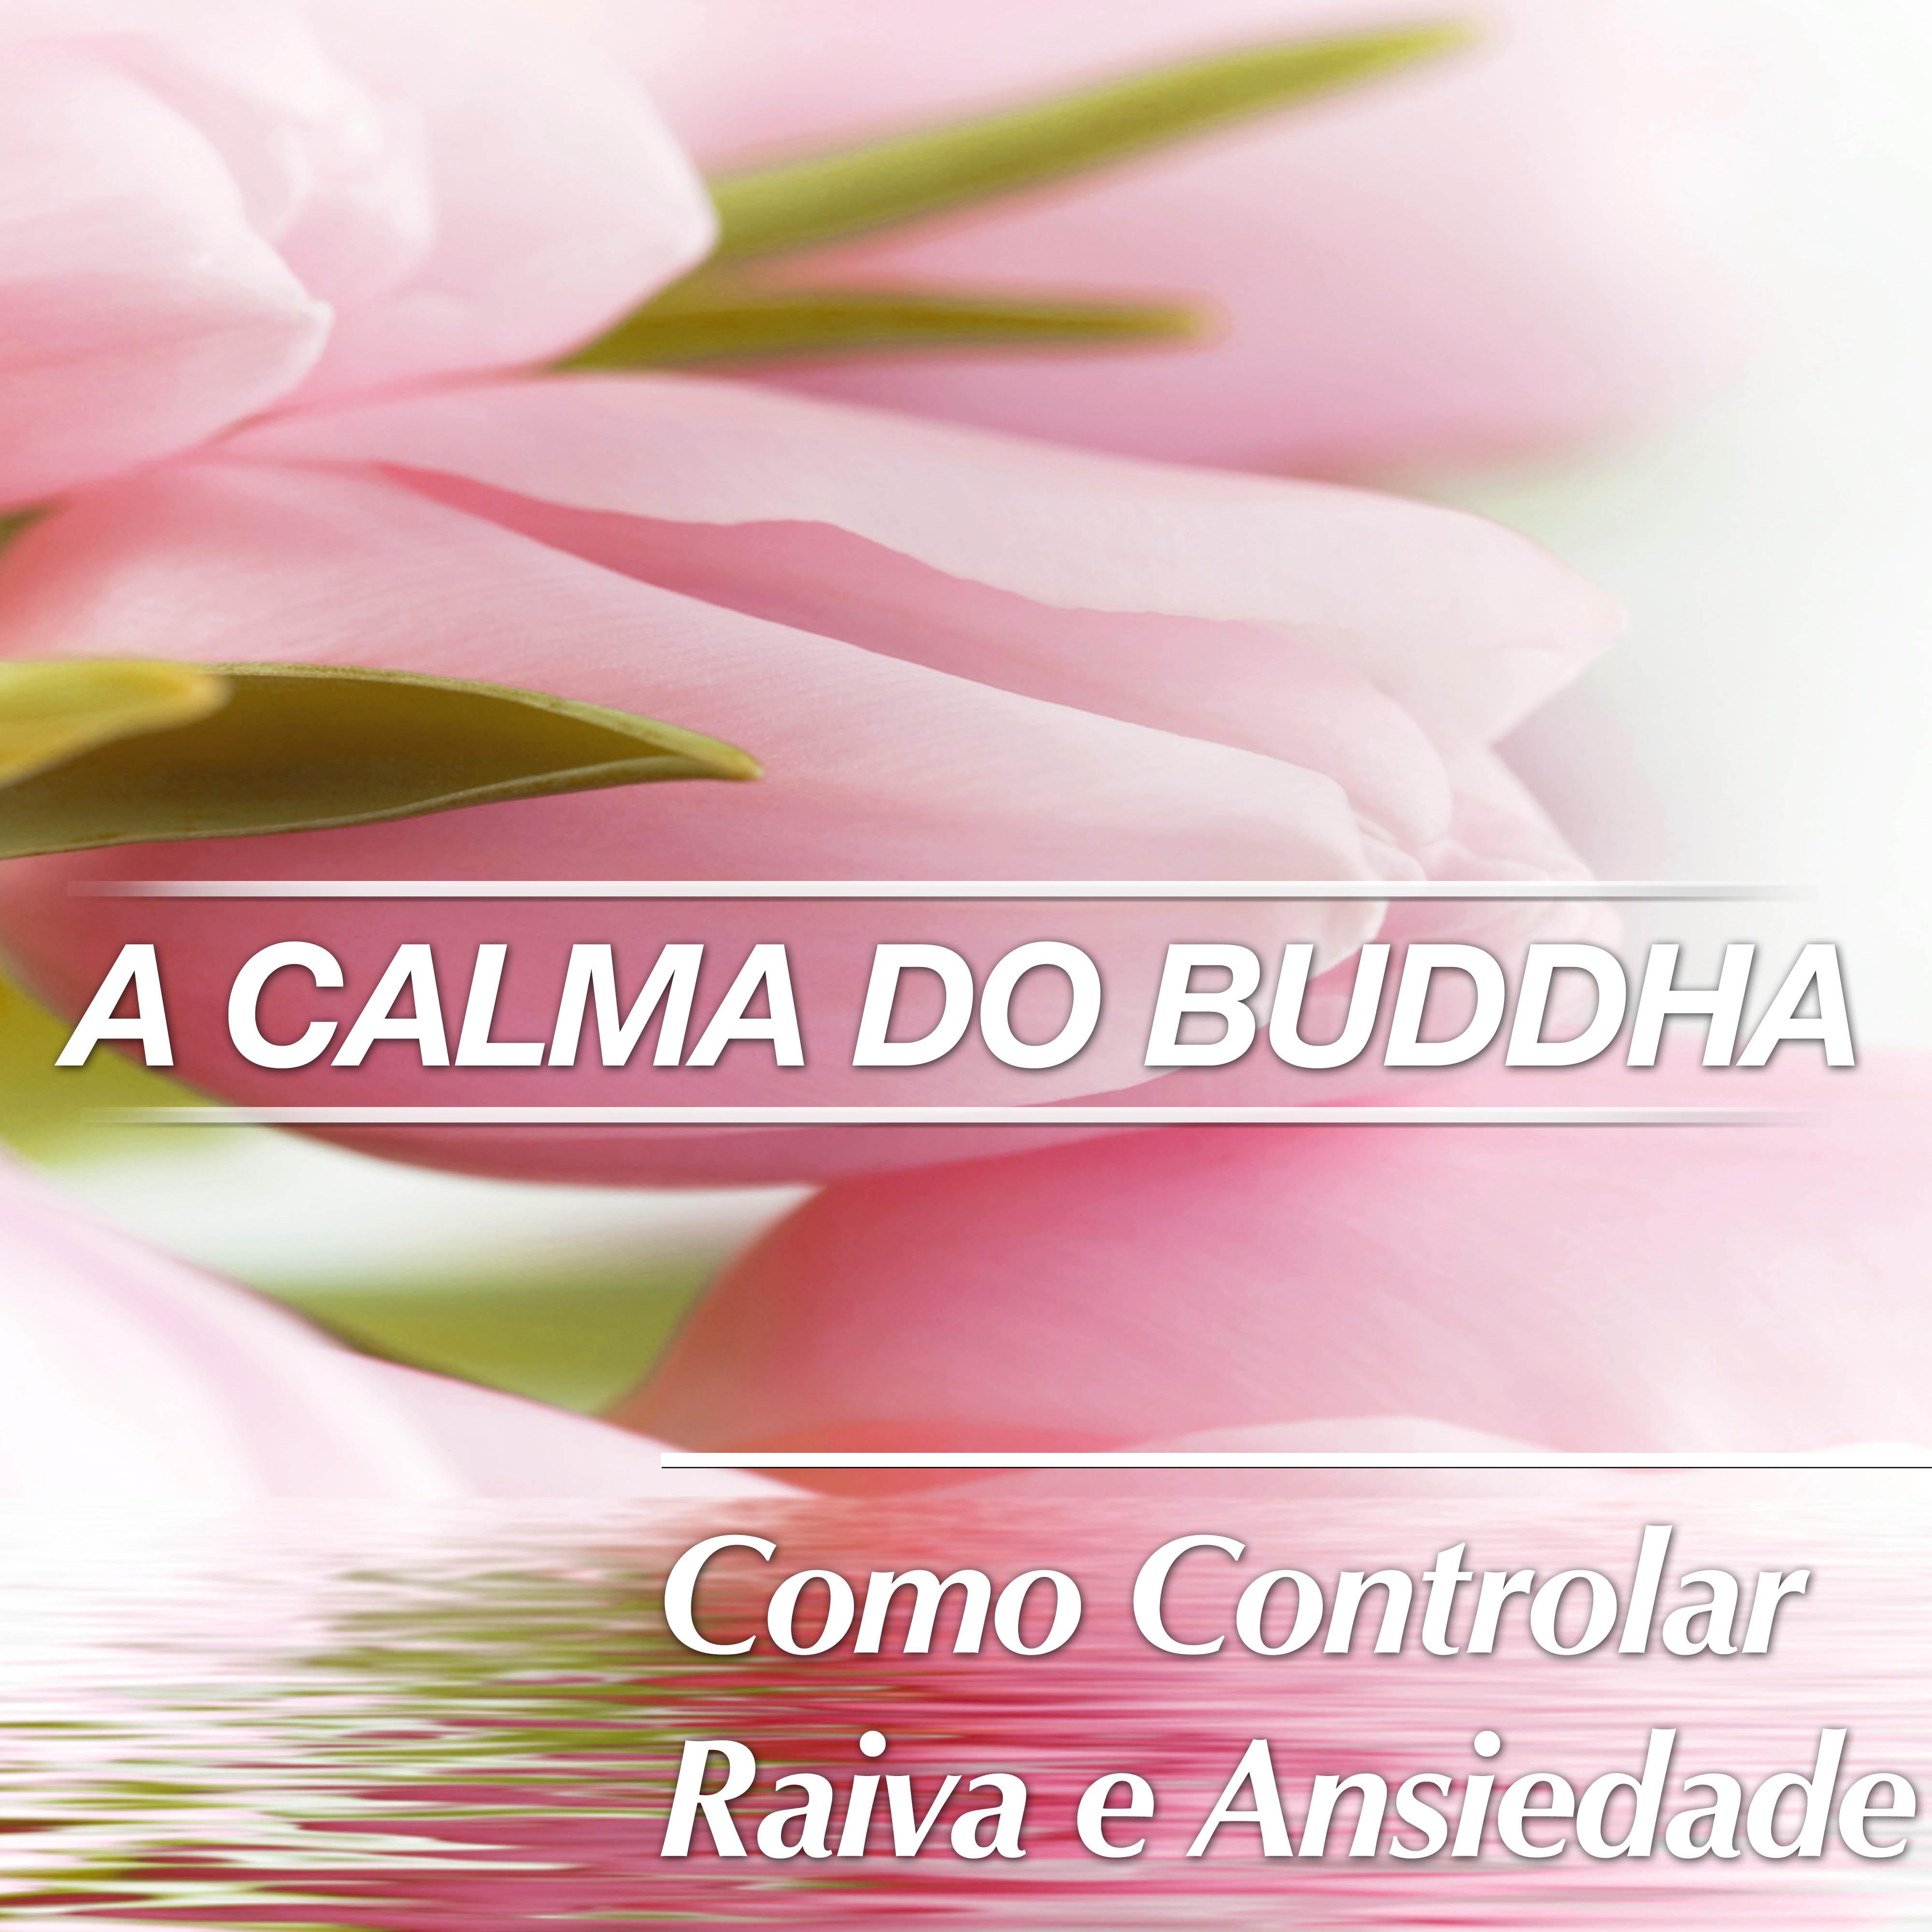 A Calma do Buddha: Como Controlar a Raiva e Ansiedade para Dormir Bem com Mu sica Relaxante